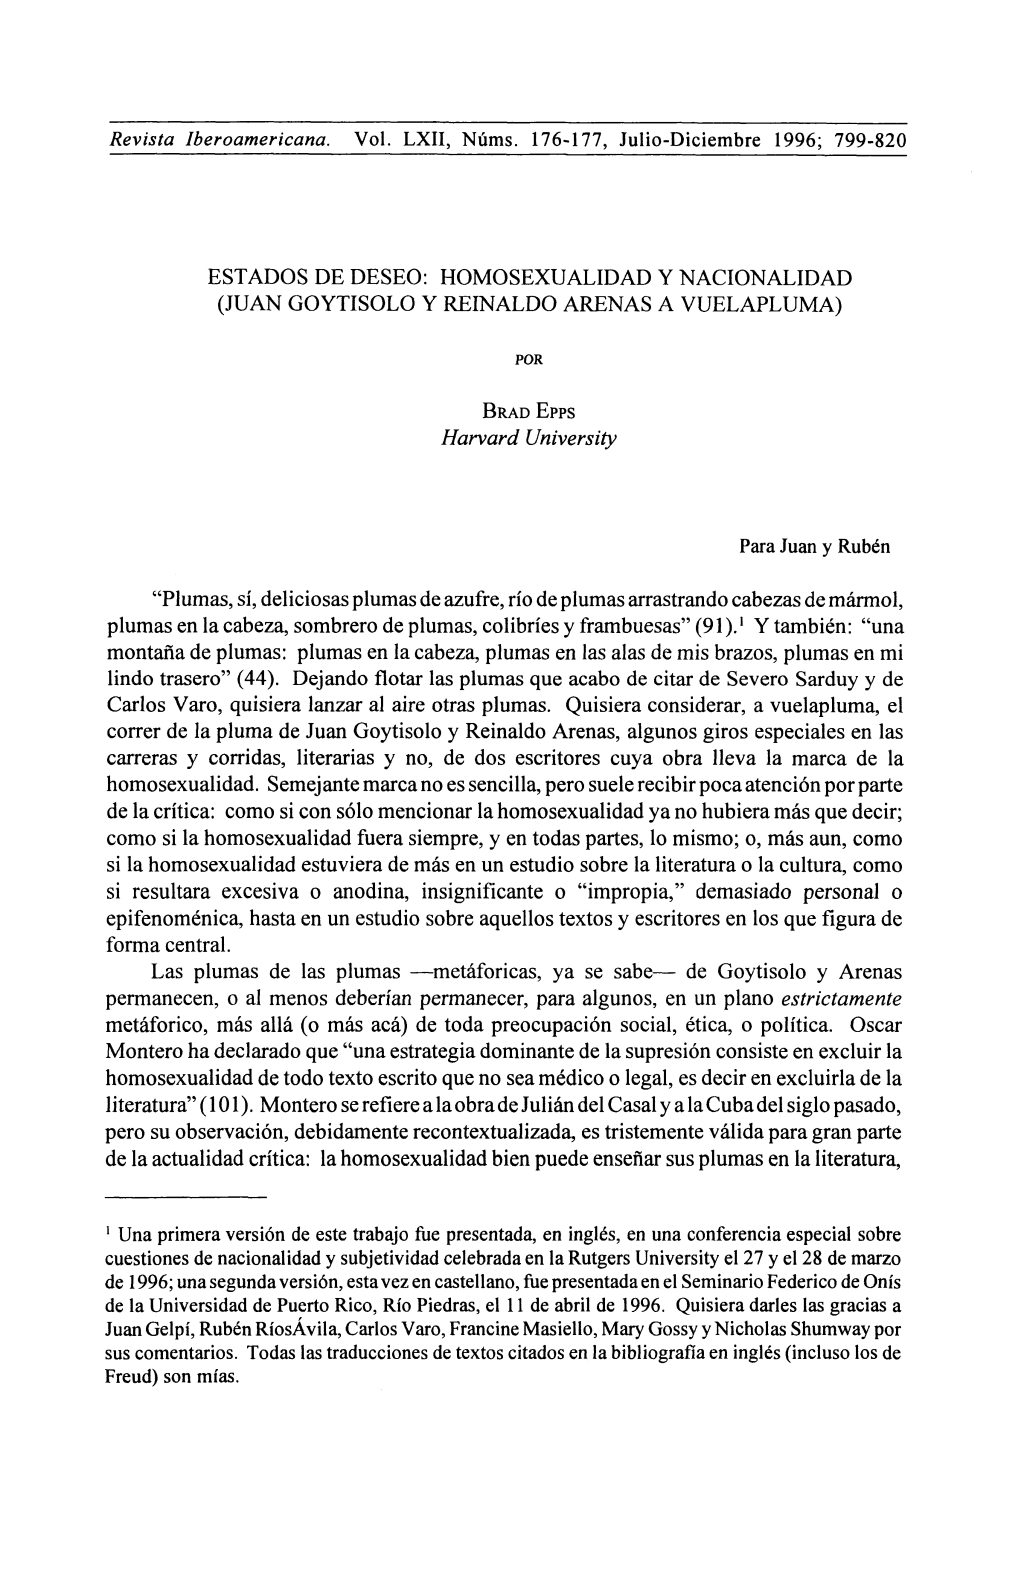 Homosexualidad Y Nacionalidad (Juan Goytisolo Y Reinaldo Arenas a Vuelapluma)